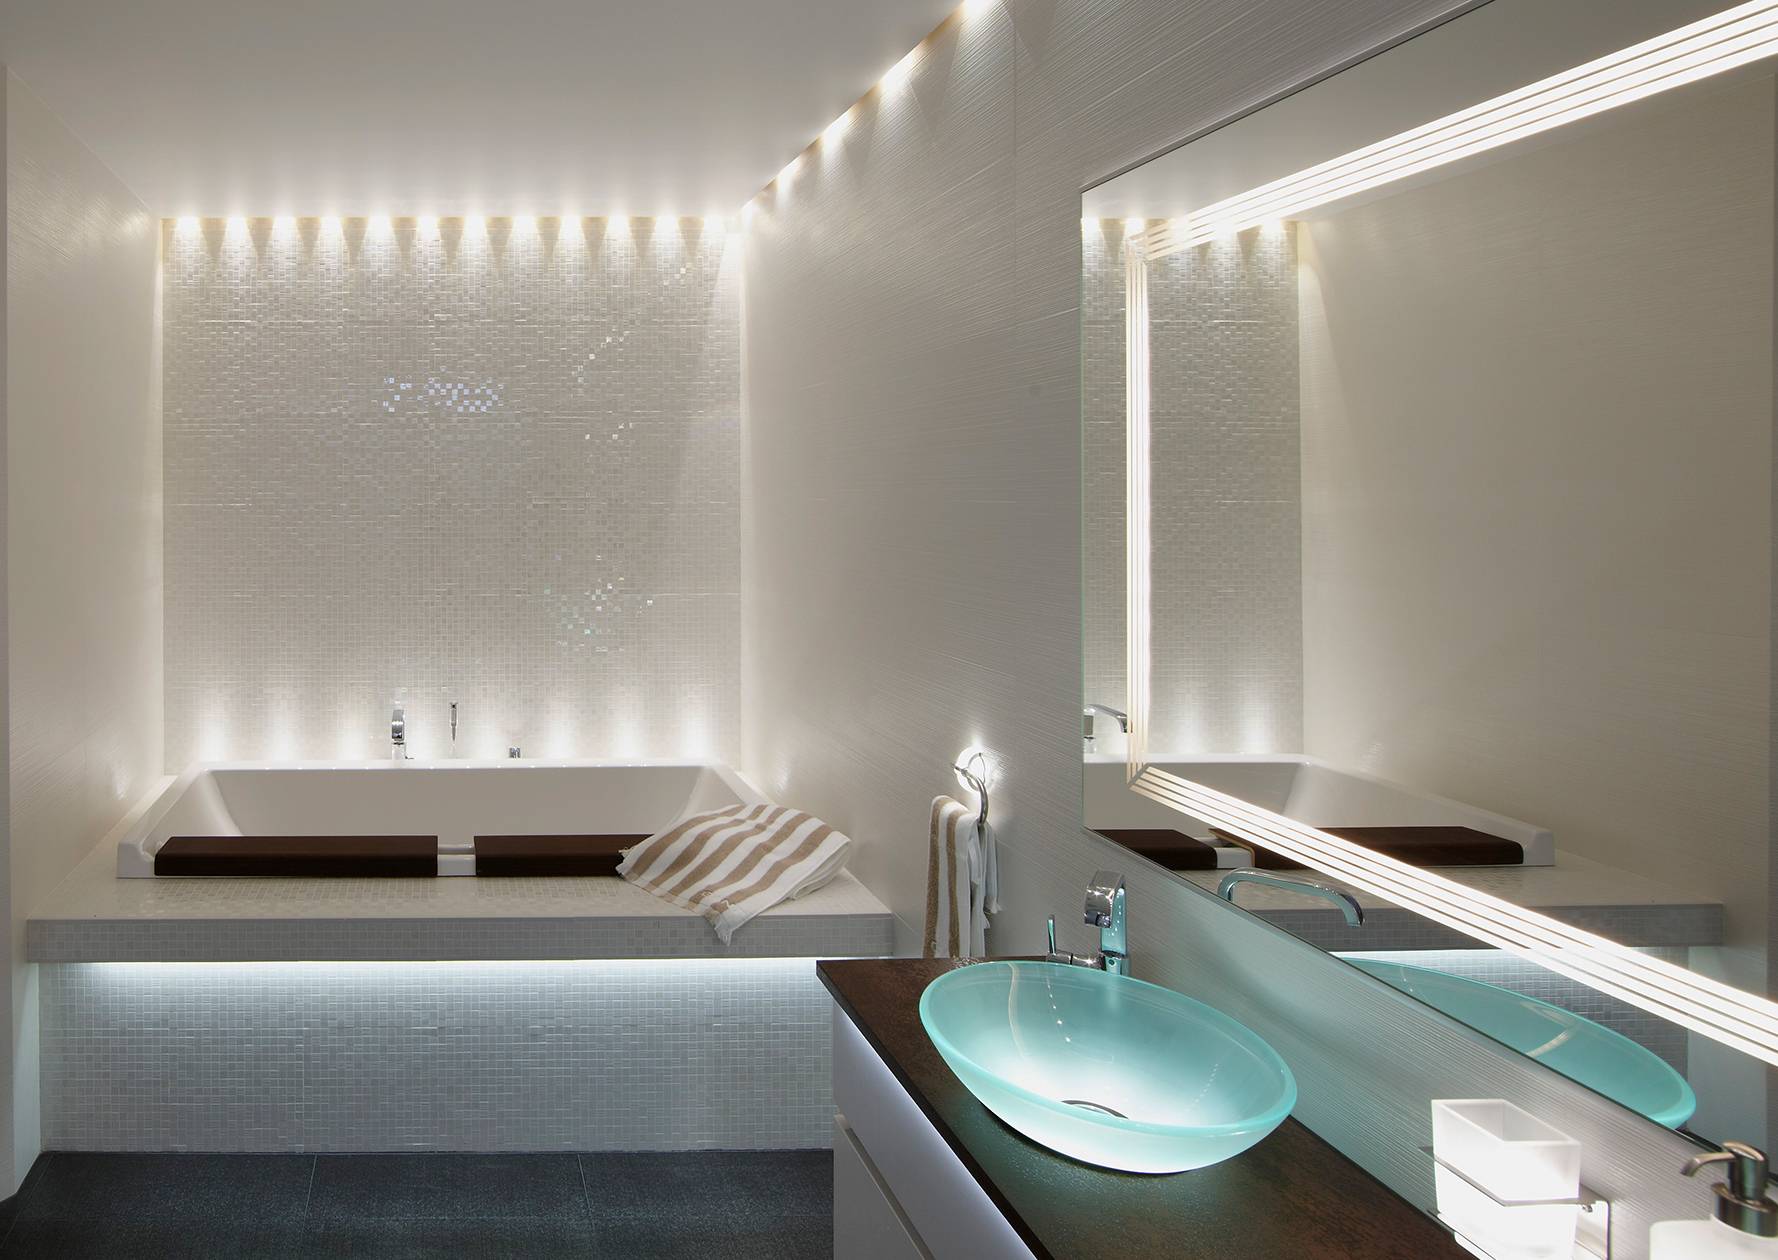 Какие светильники лучше для ванной?